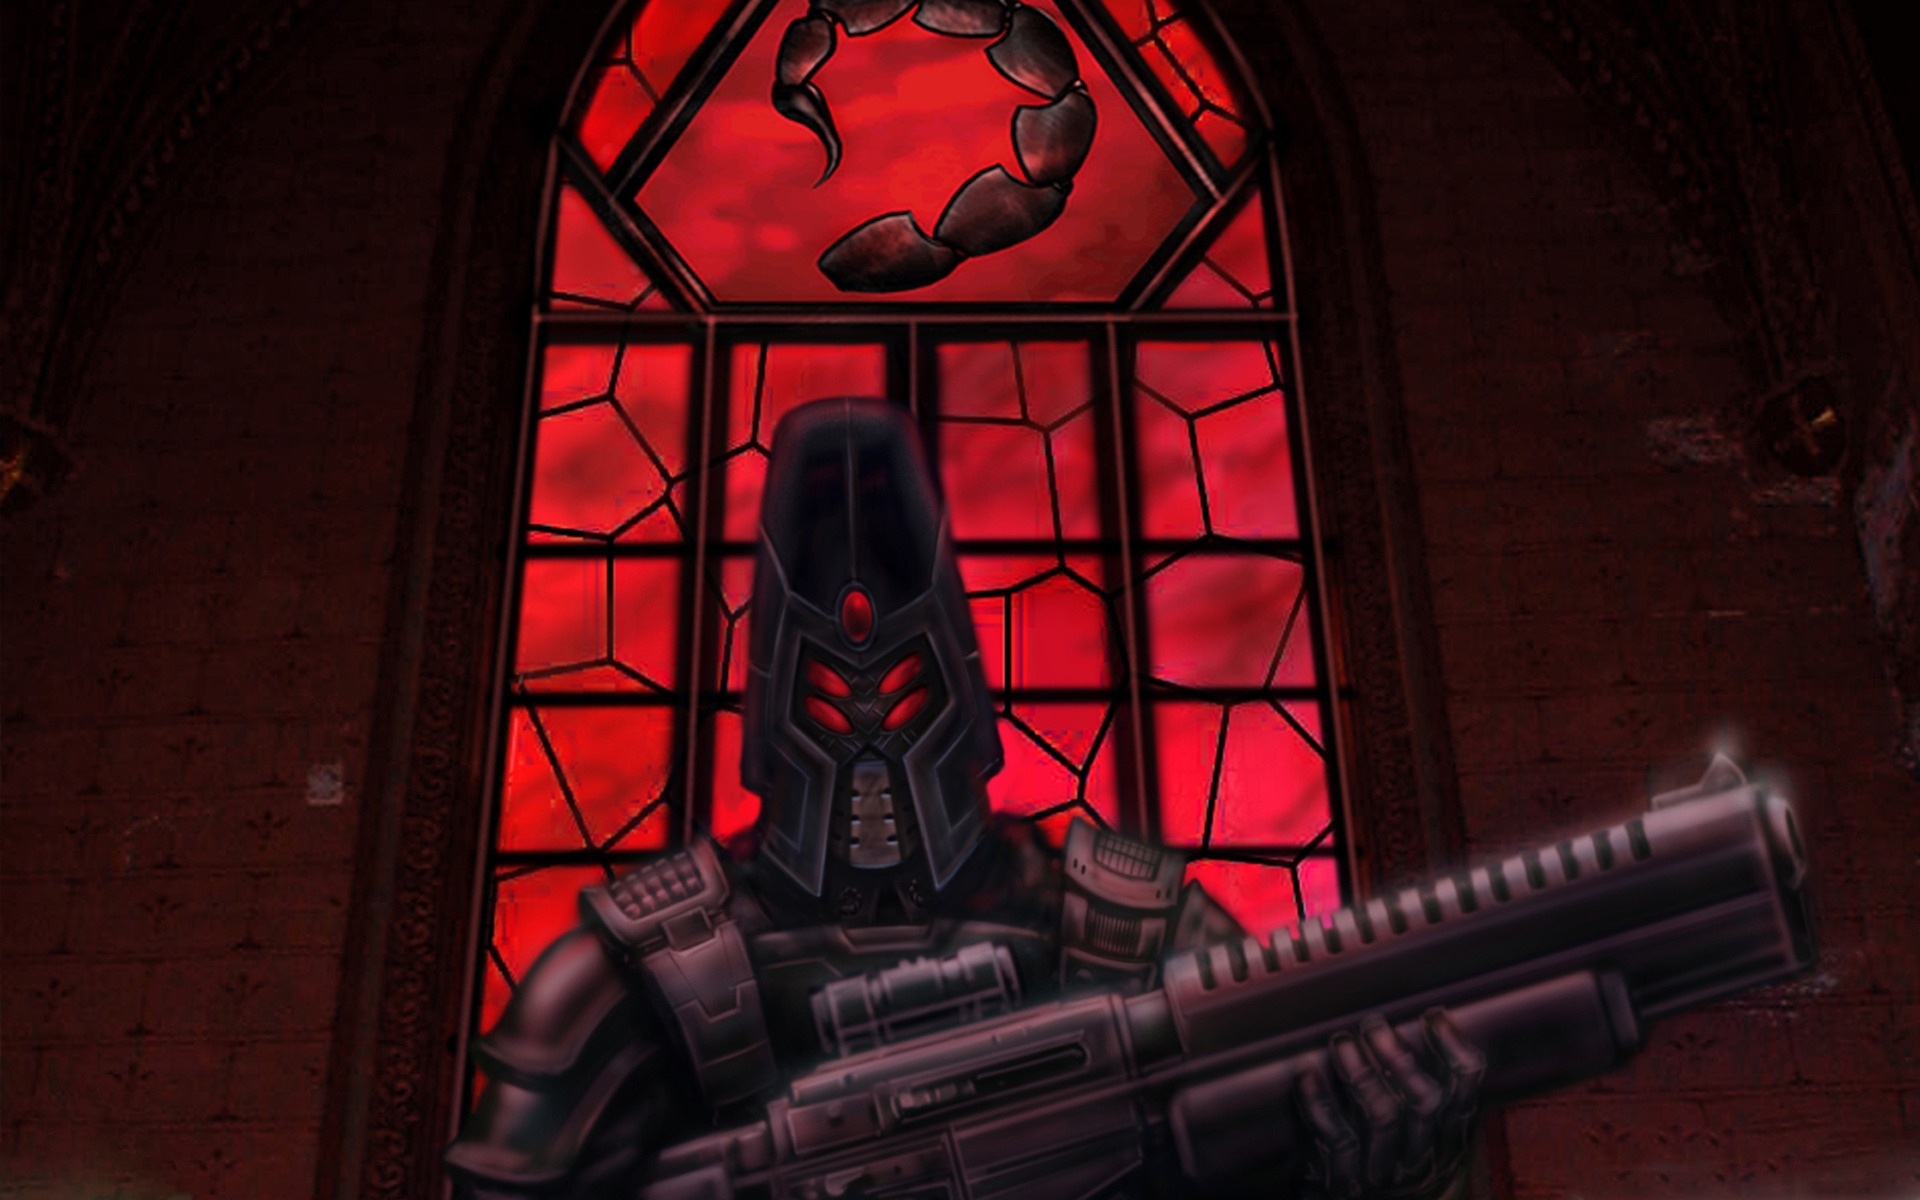 Command & Conquer Tiberium Wars Art - HD Wallpaper 